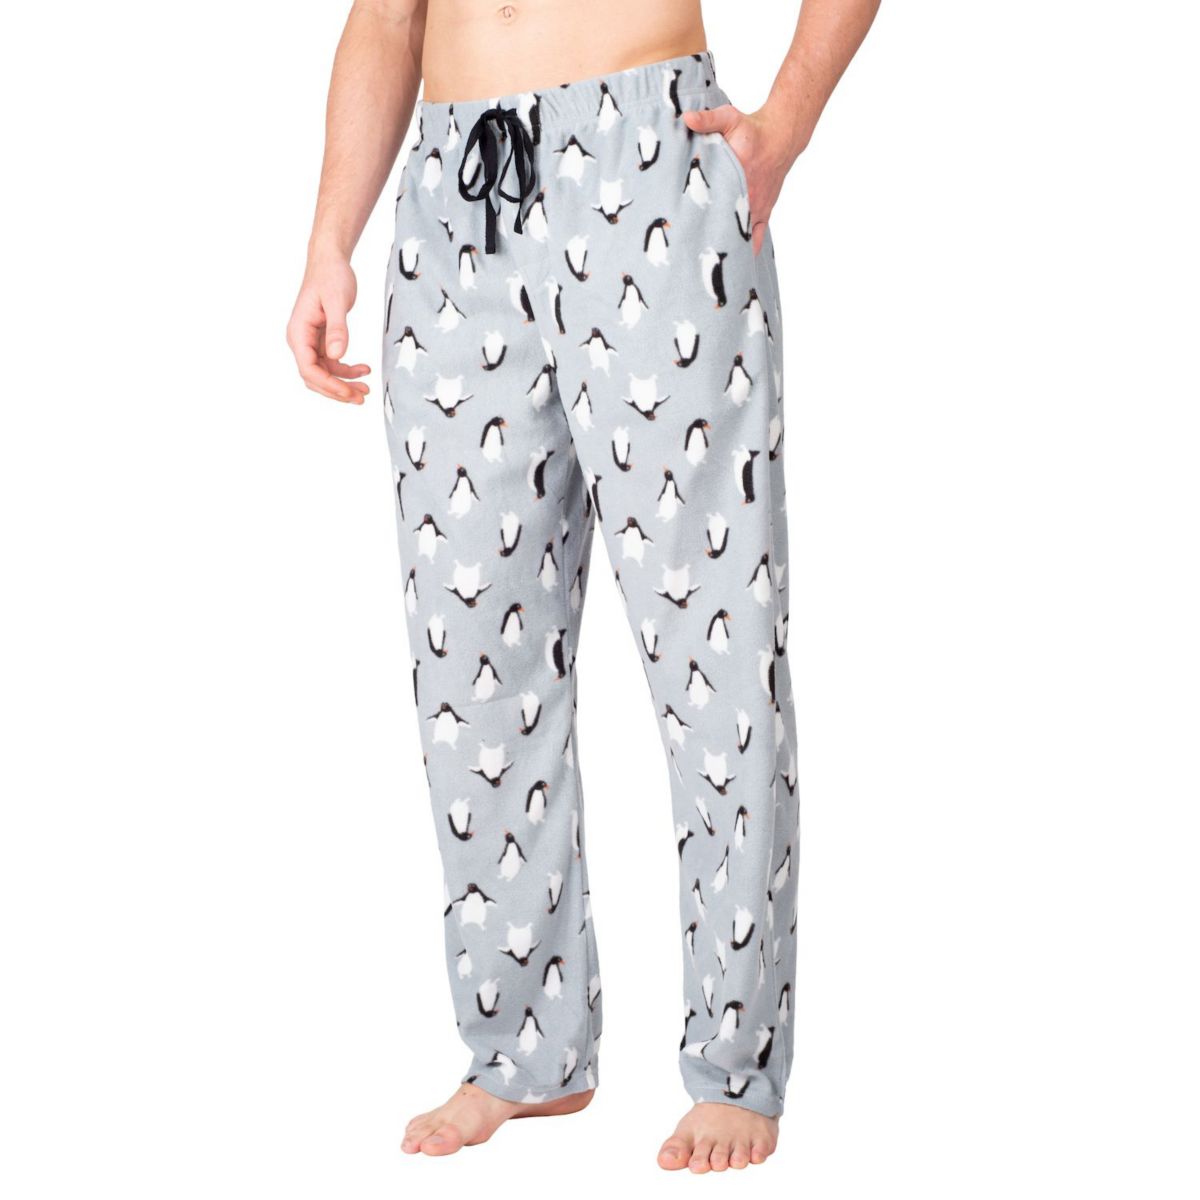 Мужские флисовые пижамные штаны SLEEPHRO Penguin SLEEPHERO